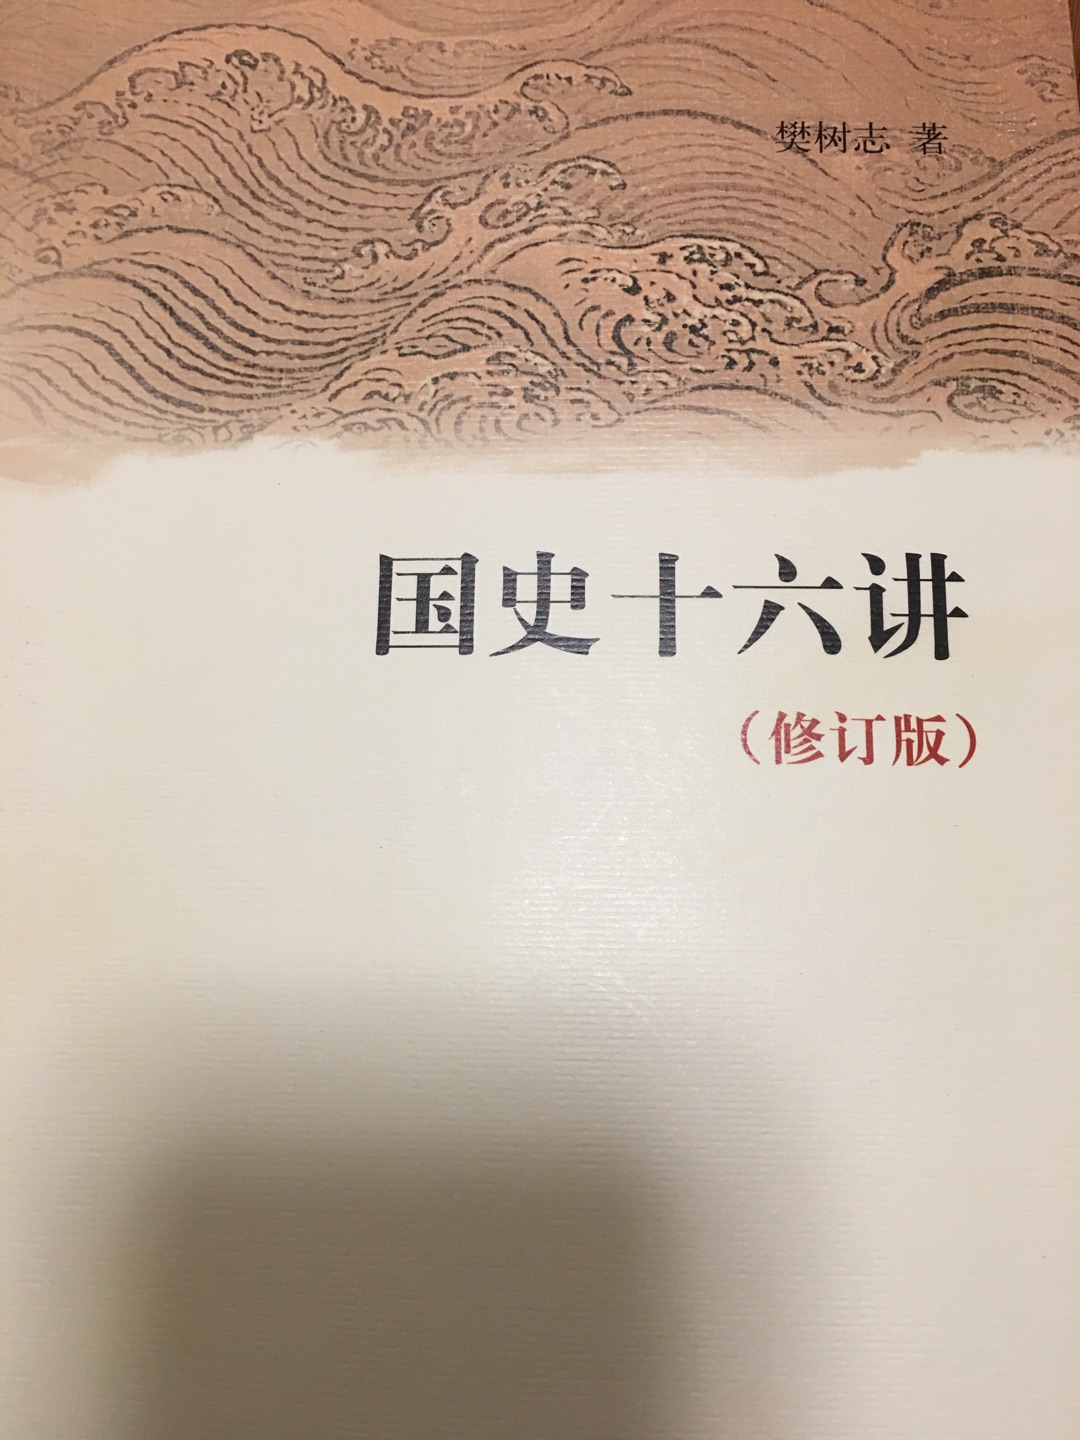 特意看完了再来评价，从上古时代一直讲到清朝，能帮读者对中国历史形成完整的映像和脉络，是本好书